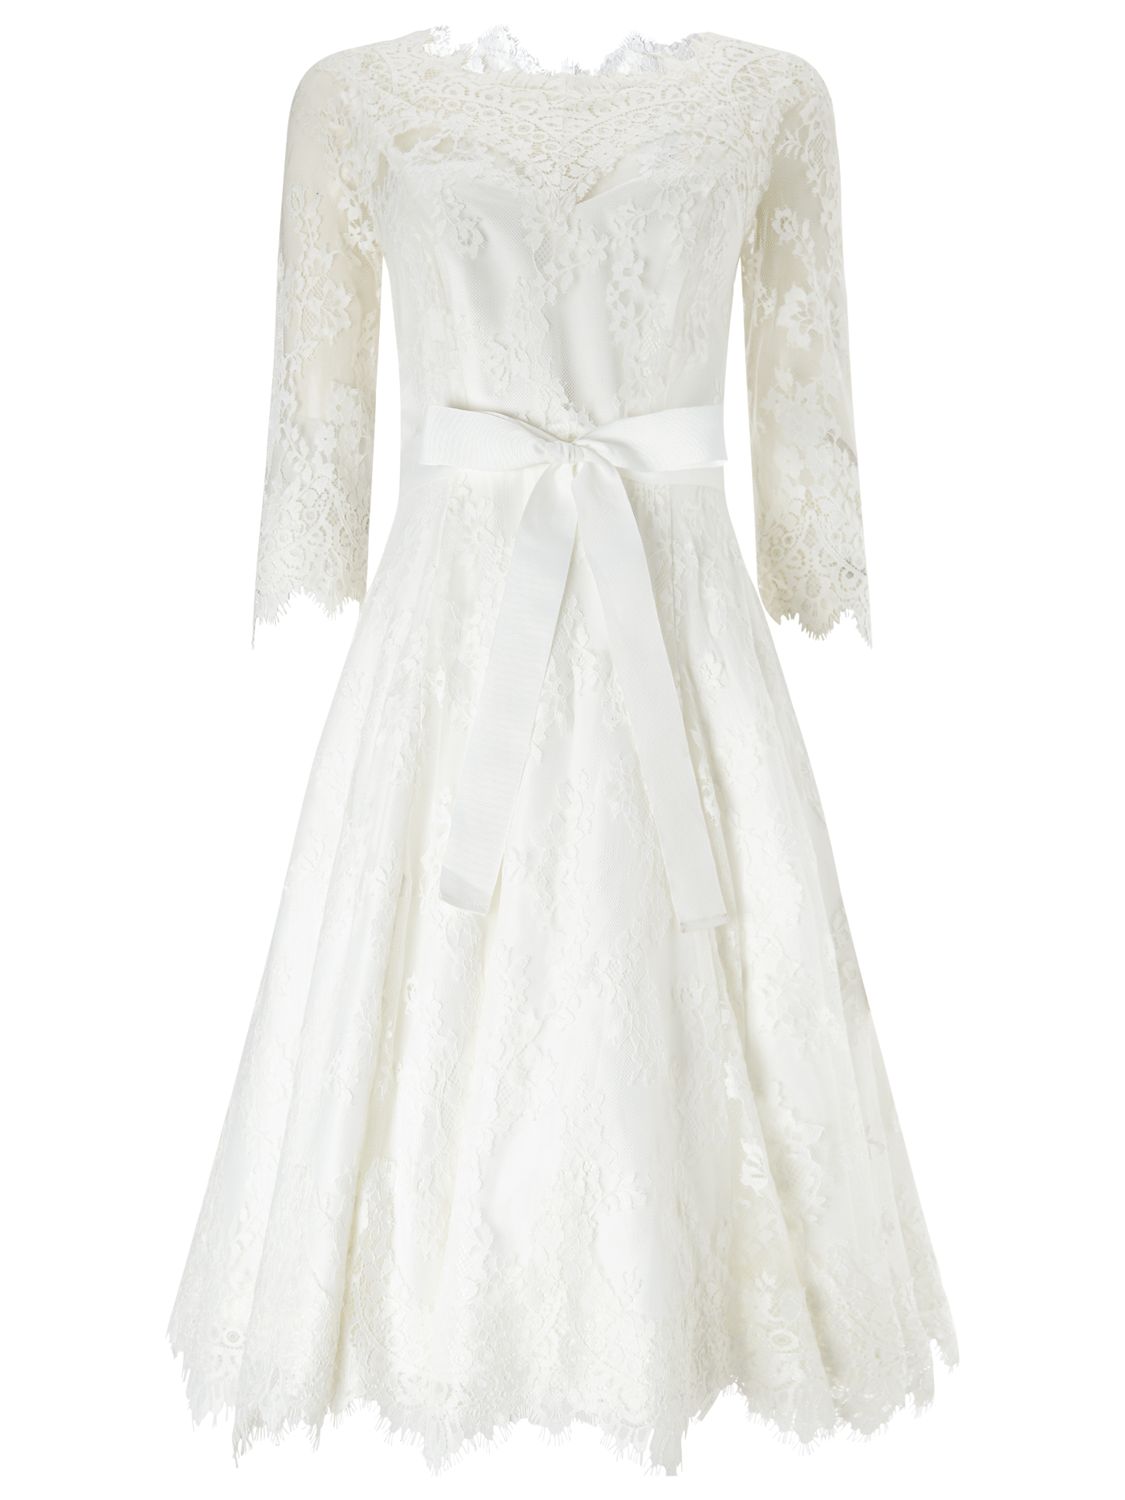 Phase Eight Bridal Cressida Wedding Dress, Ivory, 14